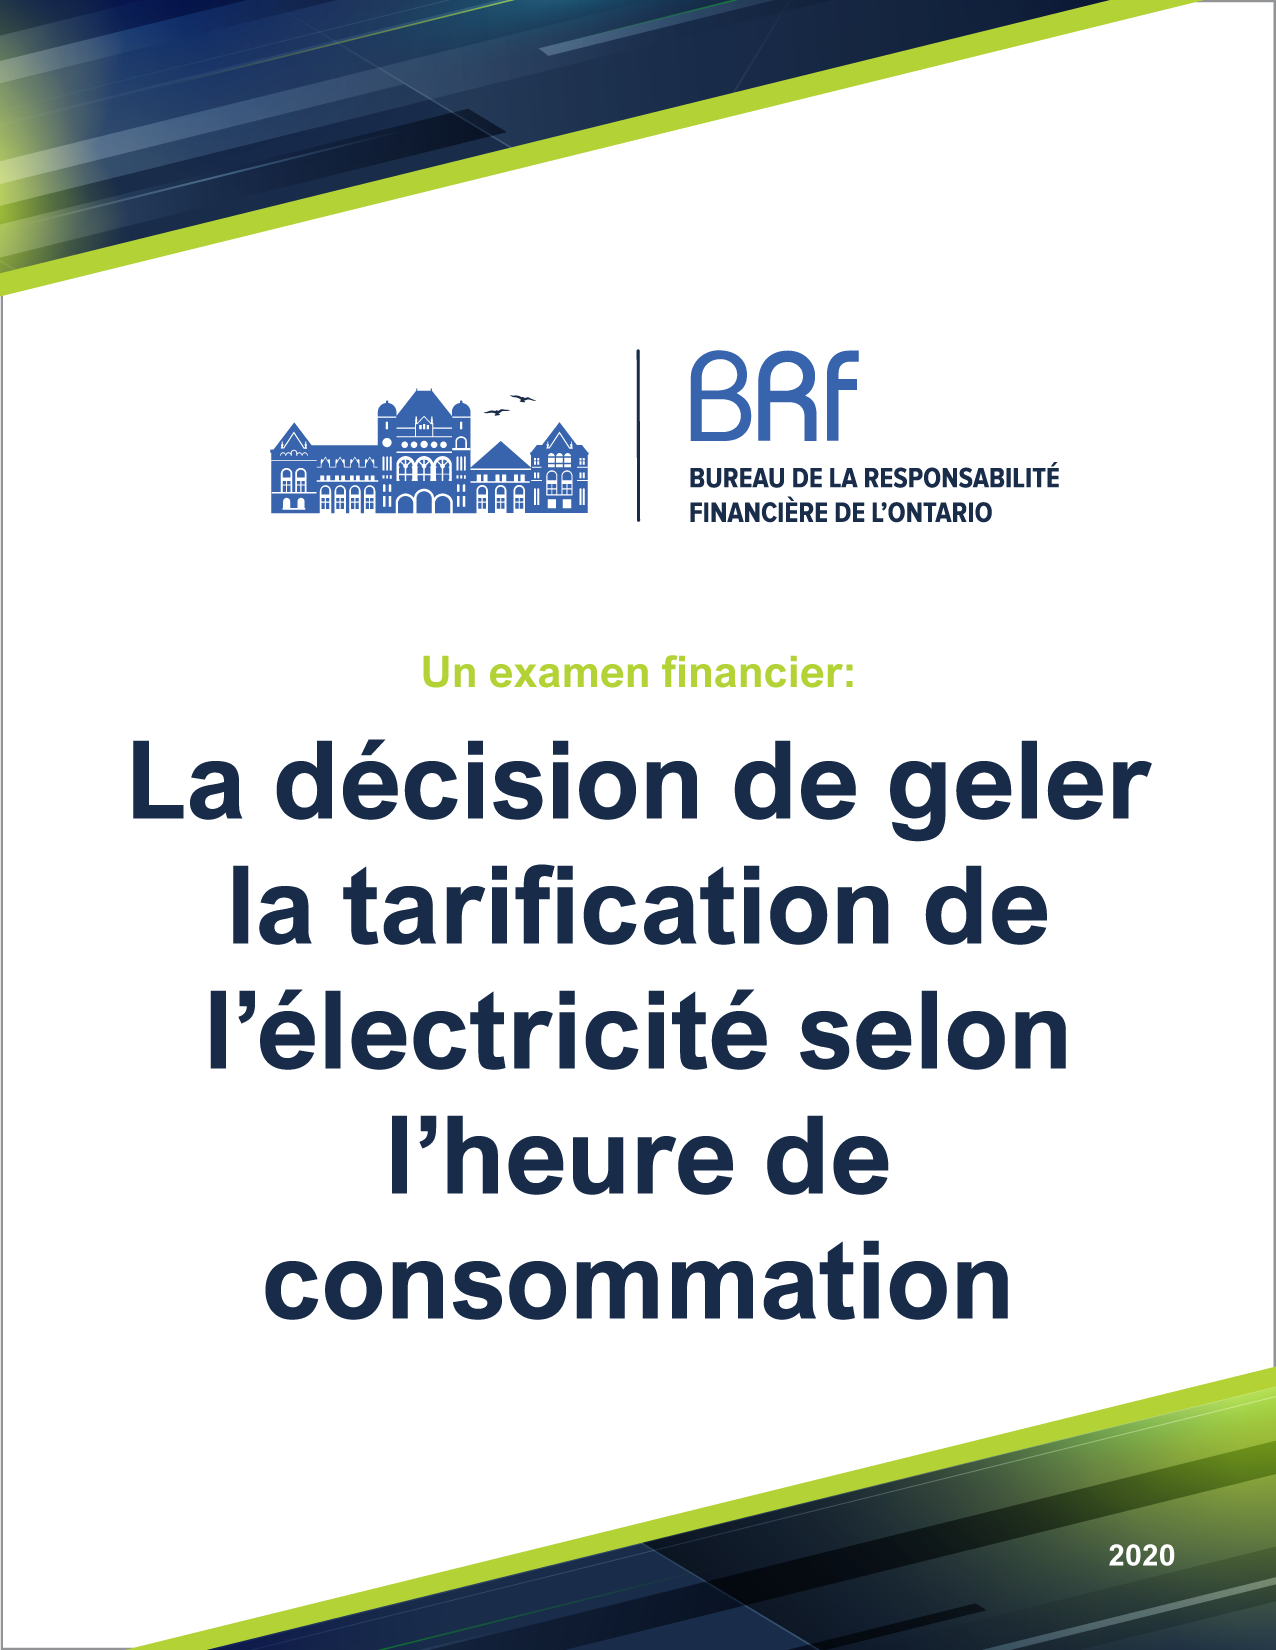 Un examen financier: La décision de geler la tarification de l’électricité selon l’heure de consommation